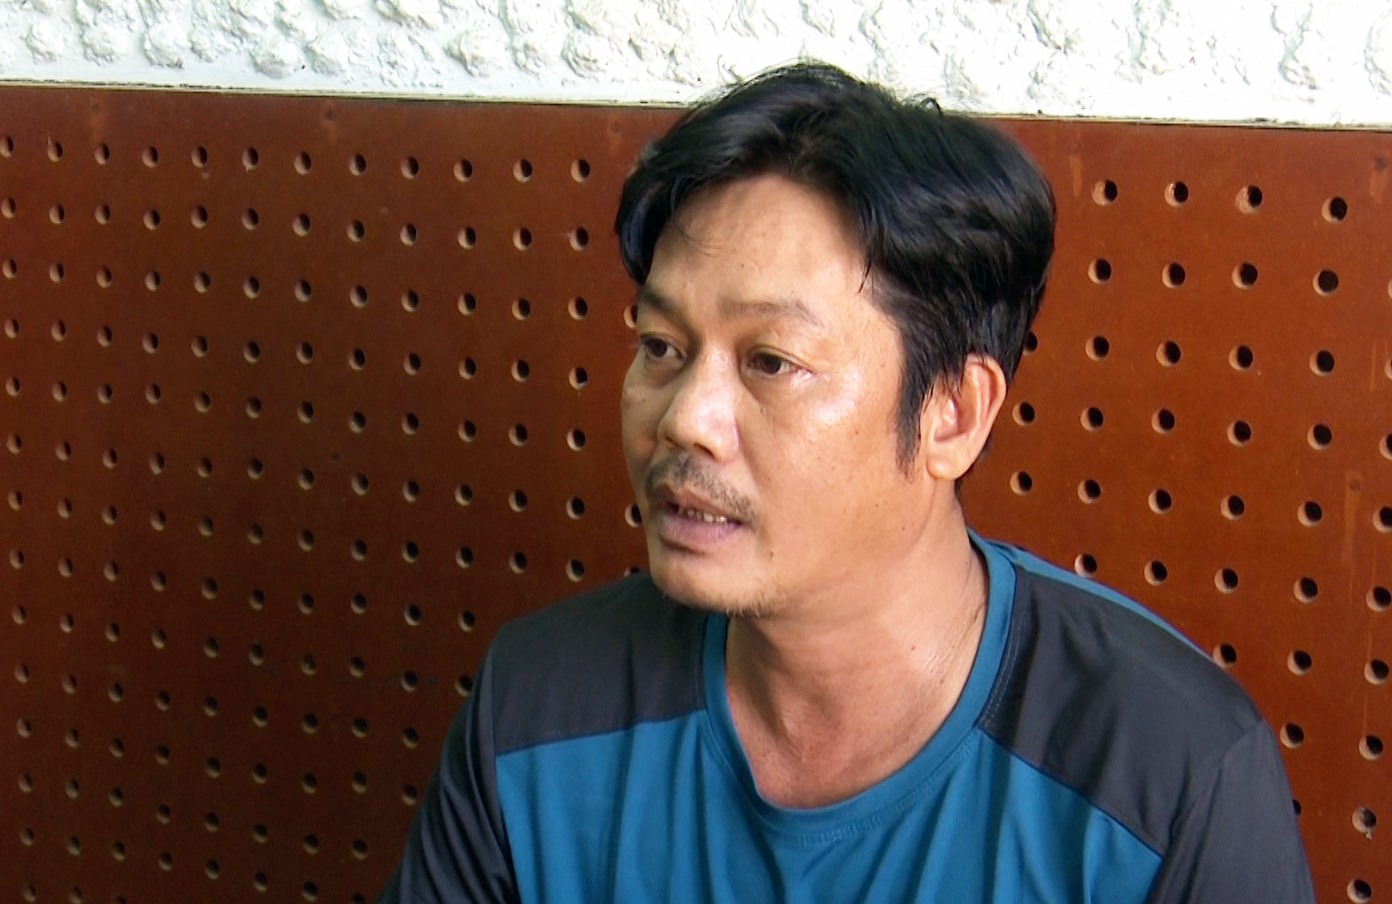 Đối tượng Nguyễn Thanh Quang bị khởi tố, bắt tạm giam vì đánh tử vong người cùng đi hành hương. Ảnh: NT